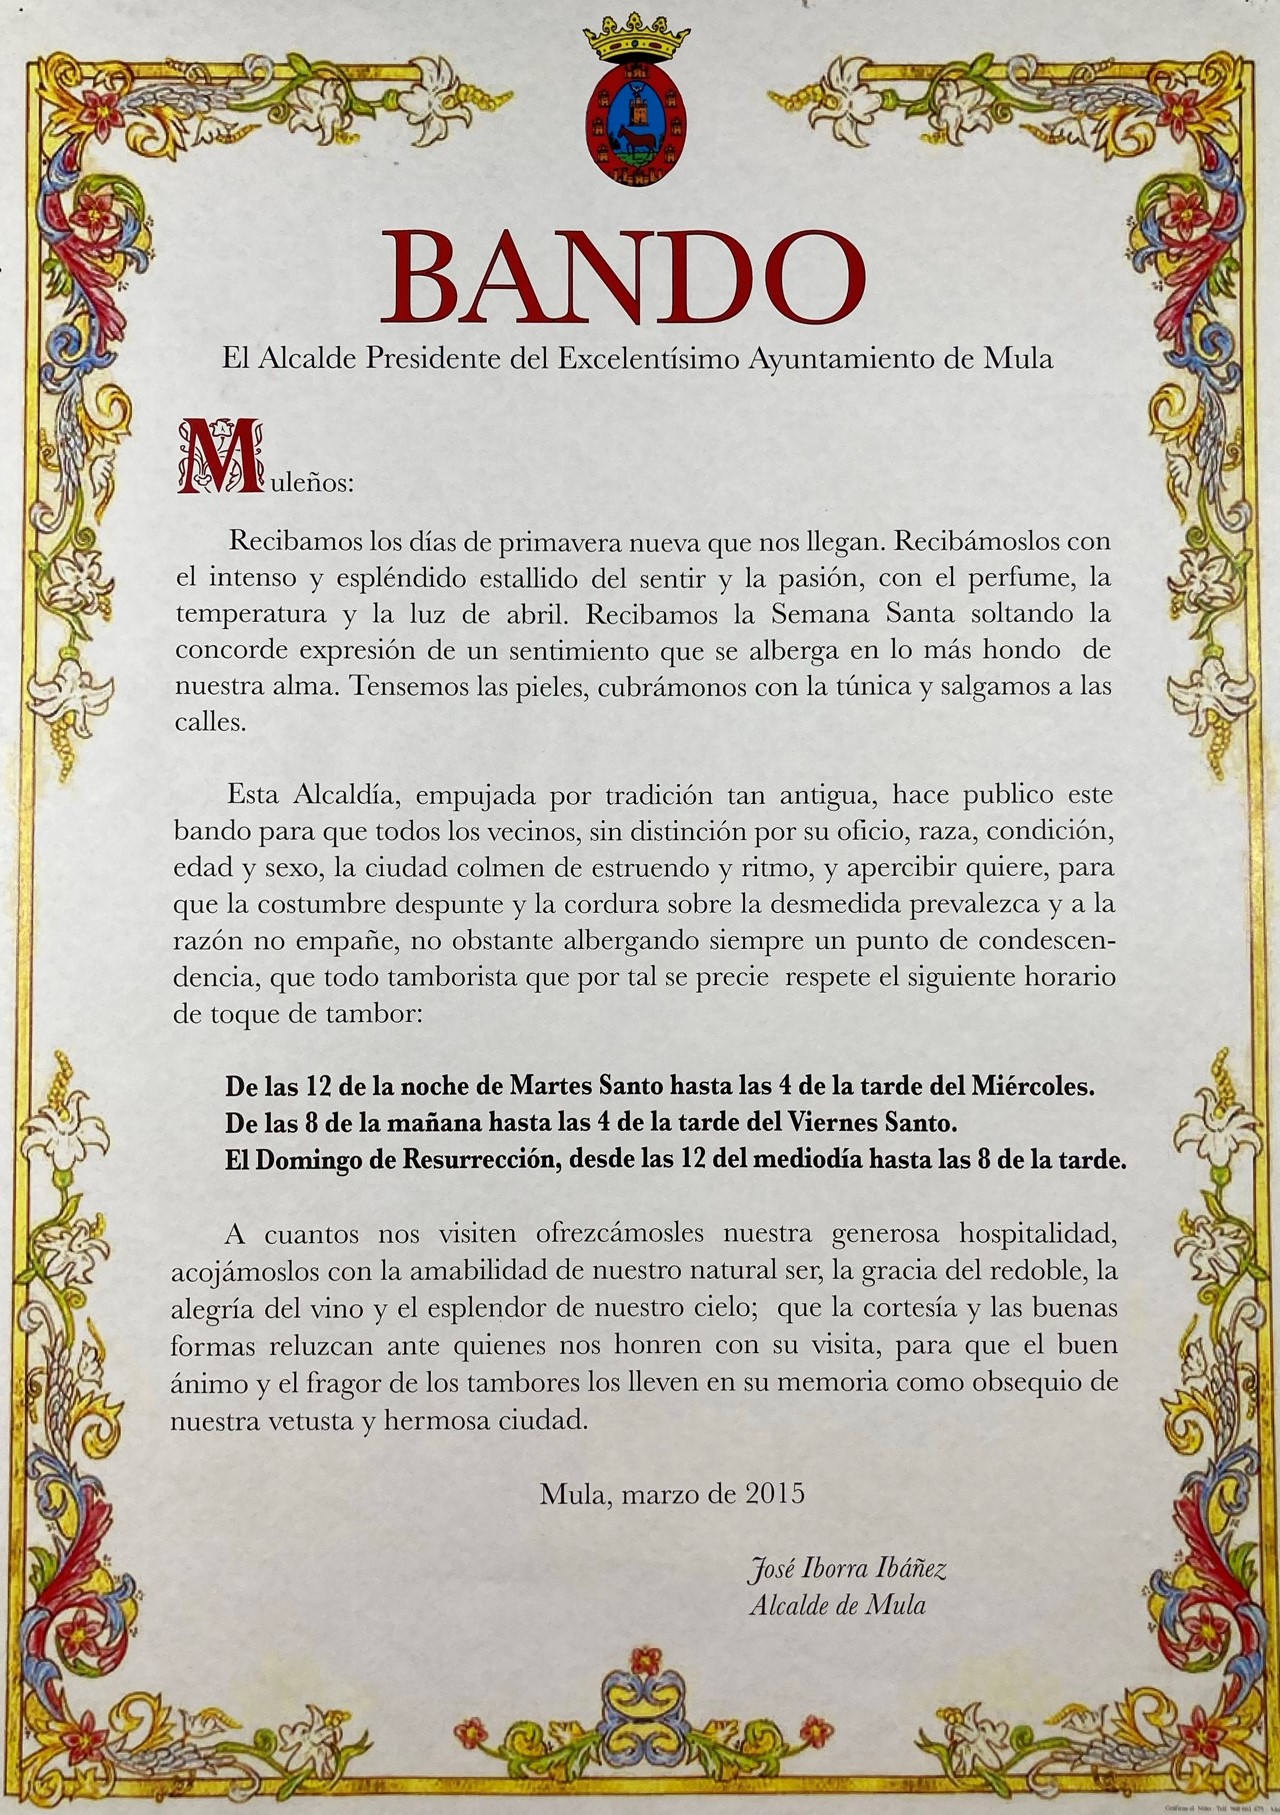 "Bando" (Schlagzeugwerbung) Stadt Mula Jahr 2015